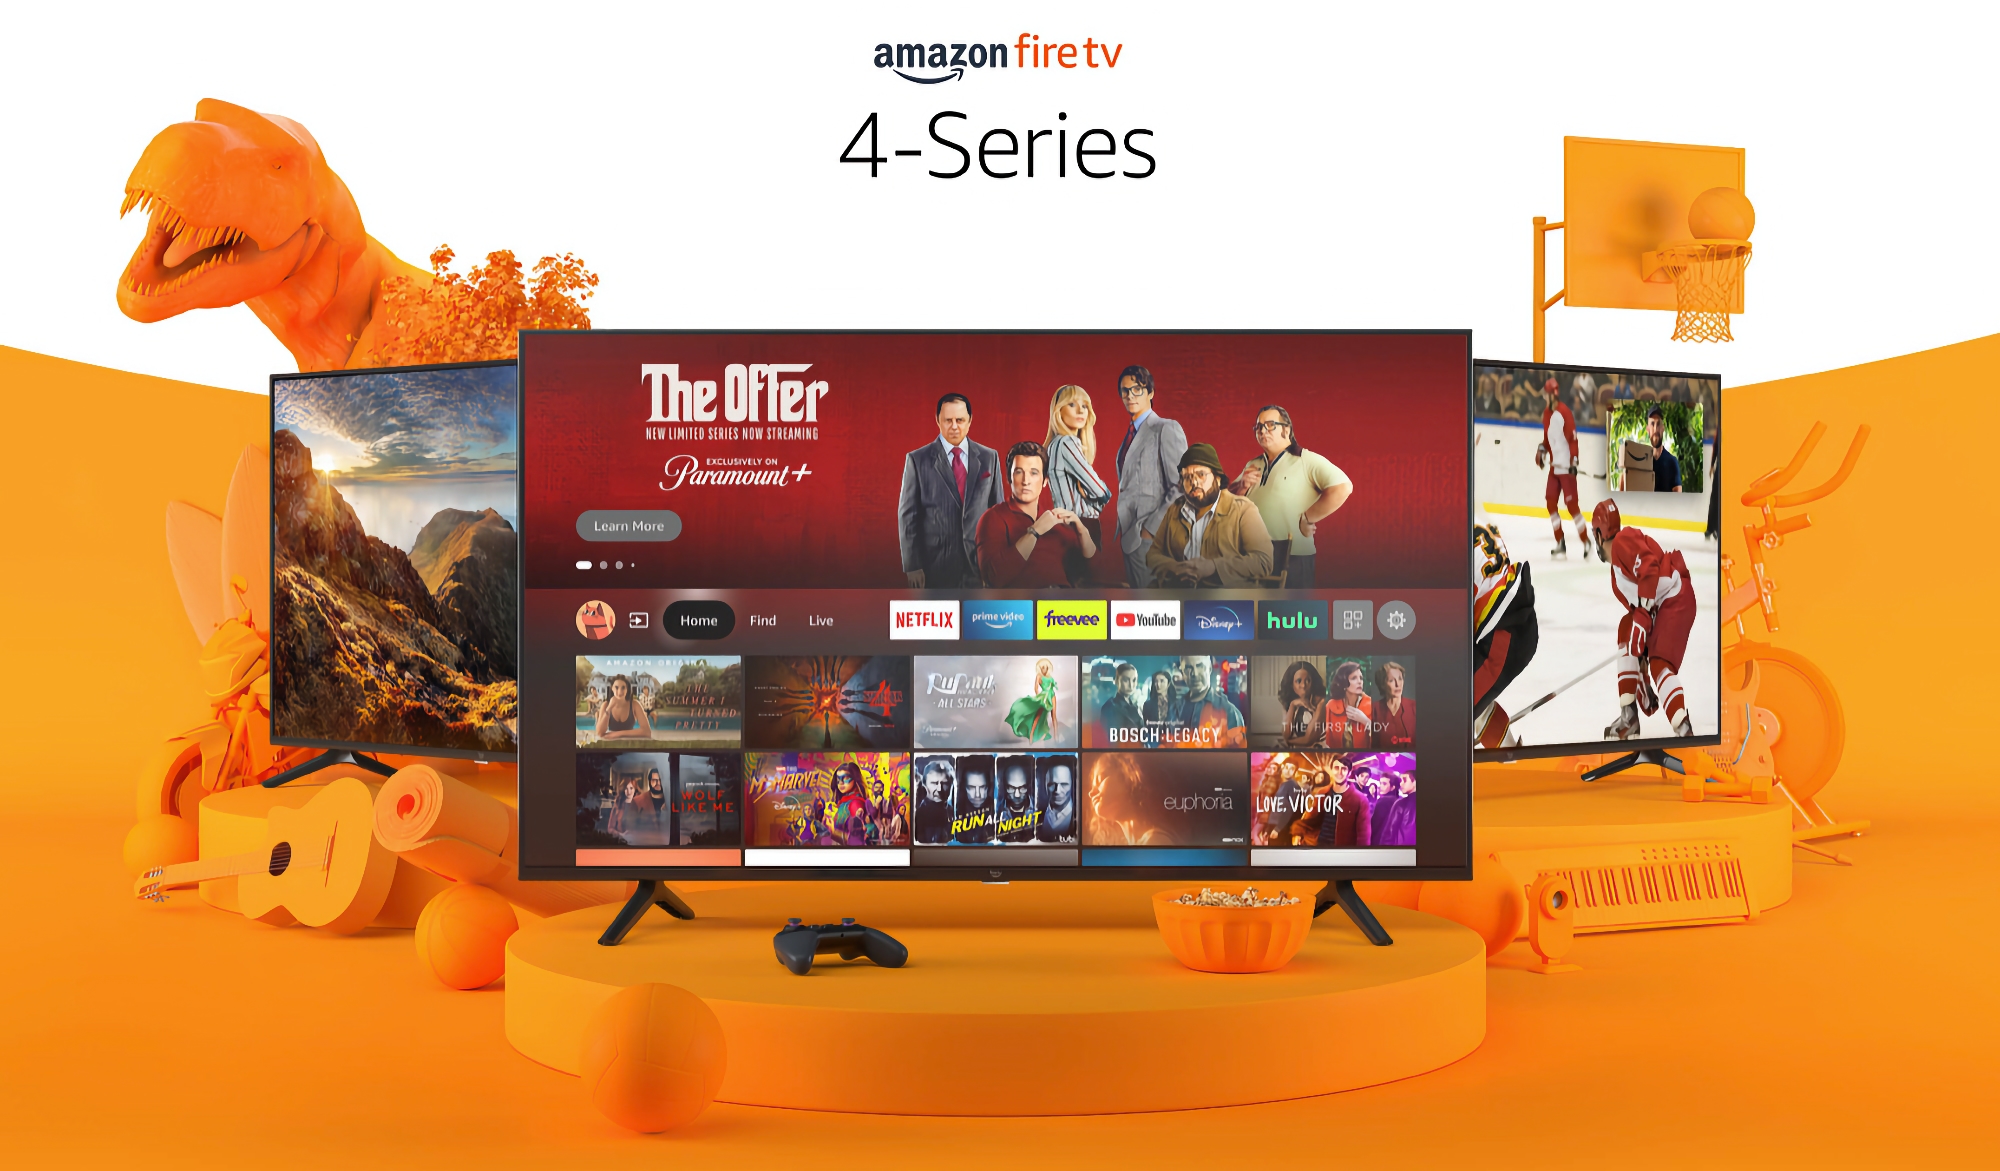 Amazon Fire TV mit 55 Zoll, 4K-Auflösung und integrierter Alexa ist zu einem ermäßigten Preis von $180 erhältlich